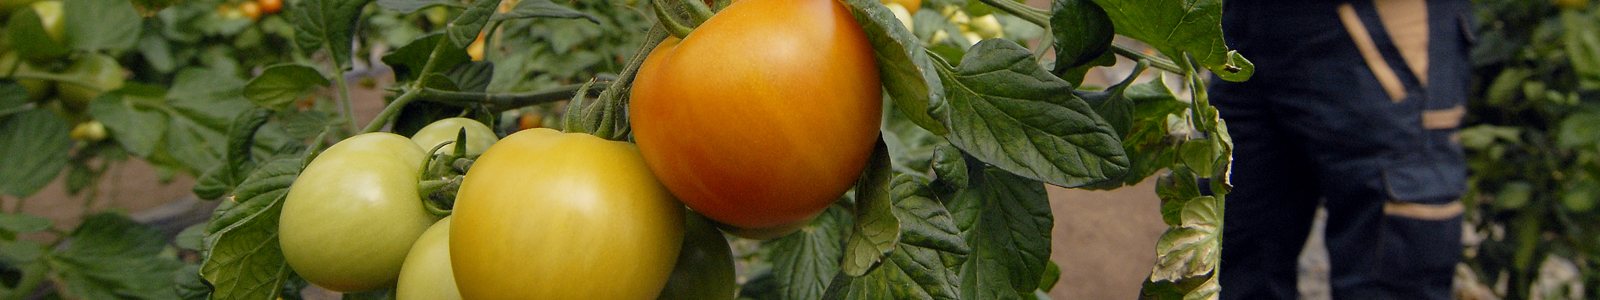 Tomaten an einer Tomatenpflanze ©Feuerbach